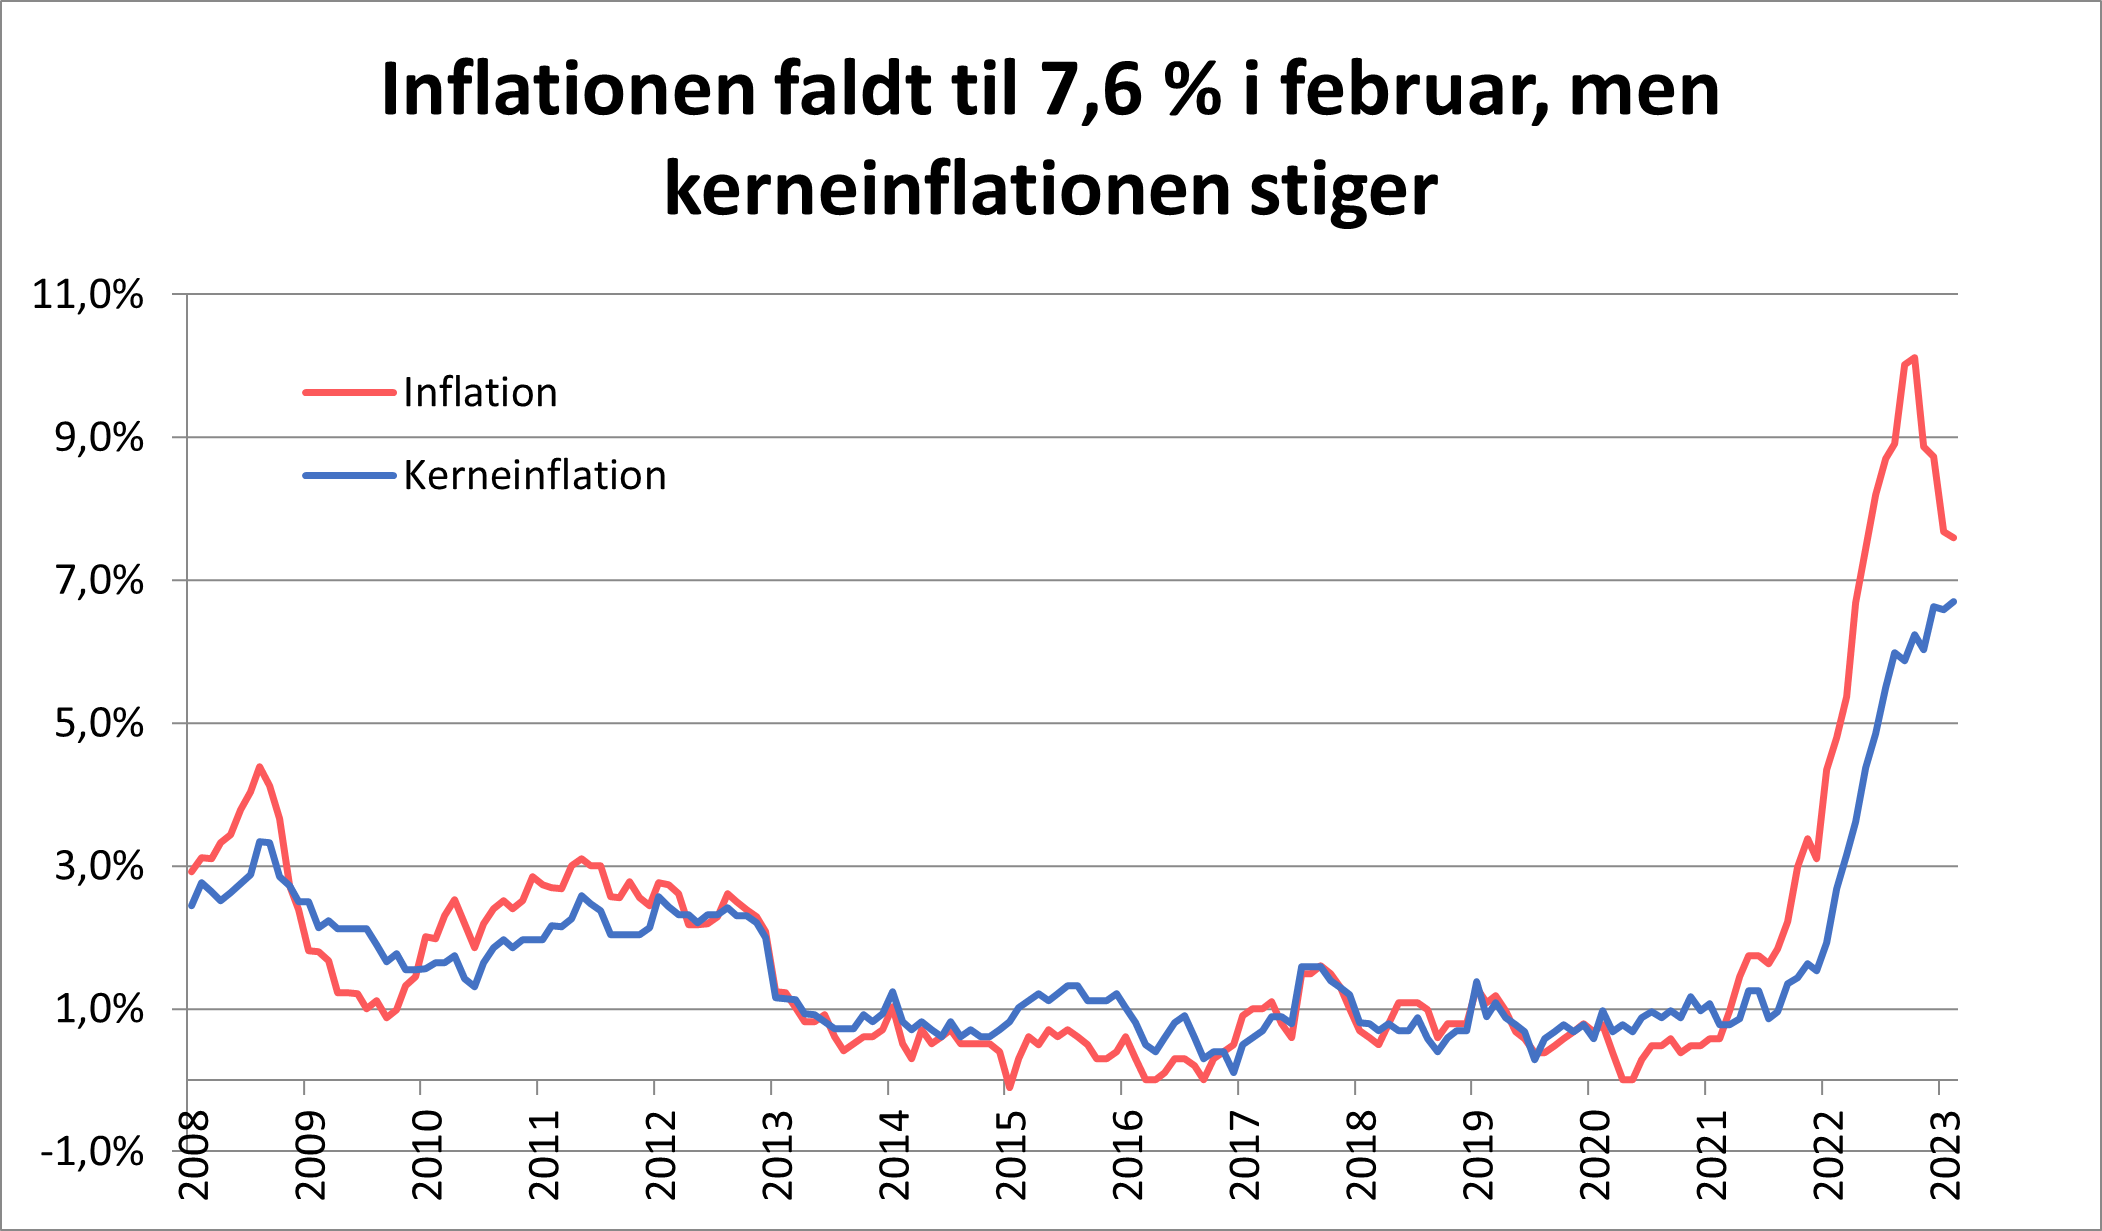 Inflationen faldt til 7,6% i februar, men kerneinflationen stiger